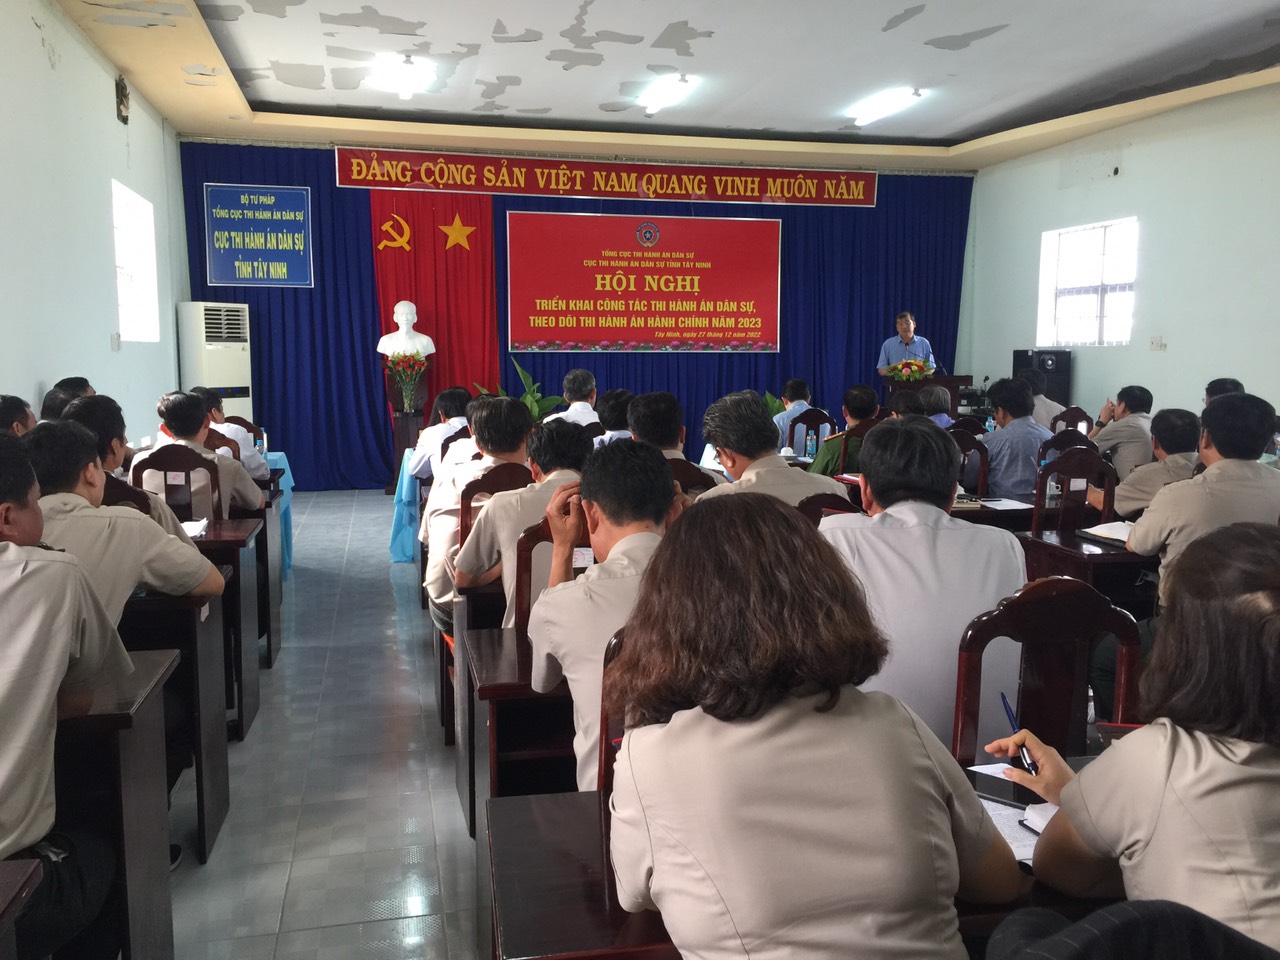 Cục Thi hành án dân sự tỉnh Tây Ninh triển khai công tác thi hành án dân sự, theo dõi thi hành án hành chính năm 2023